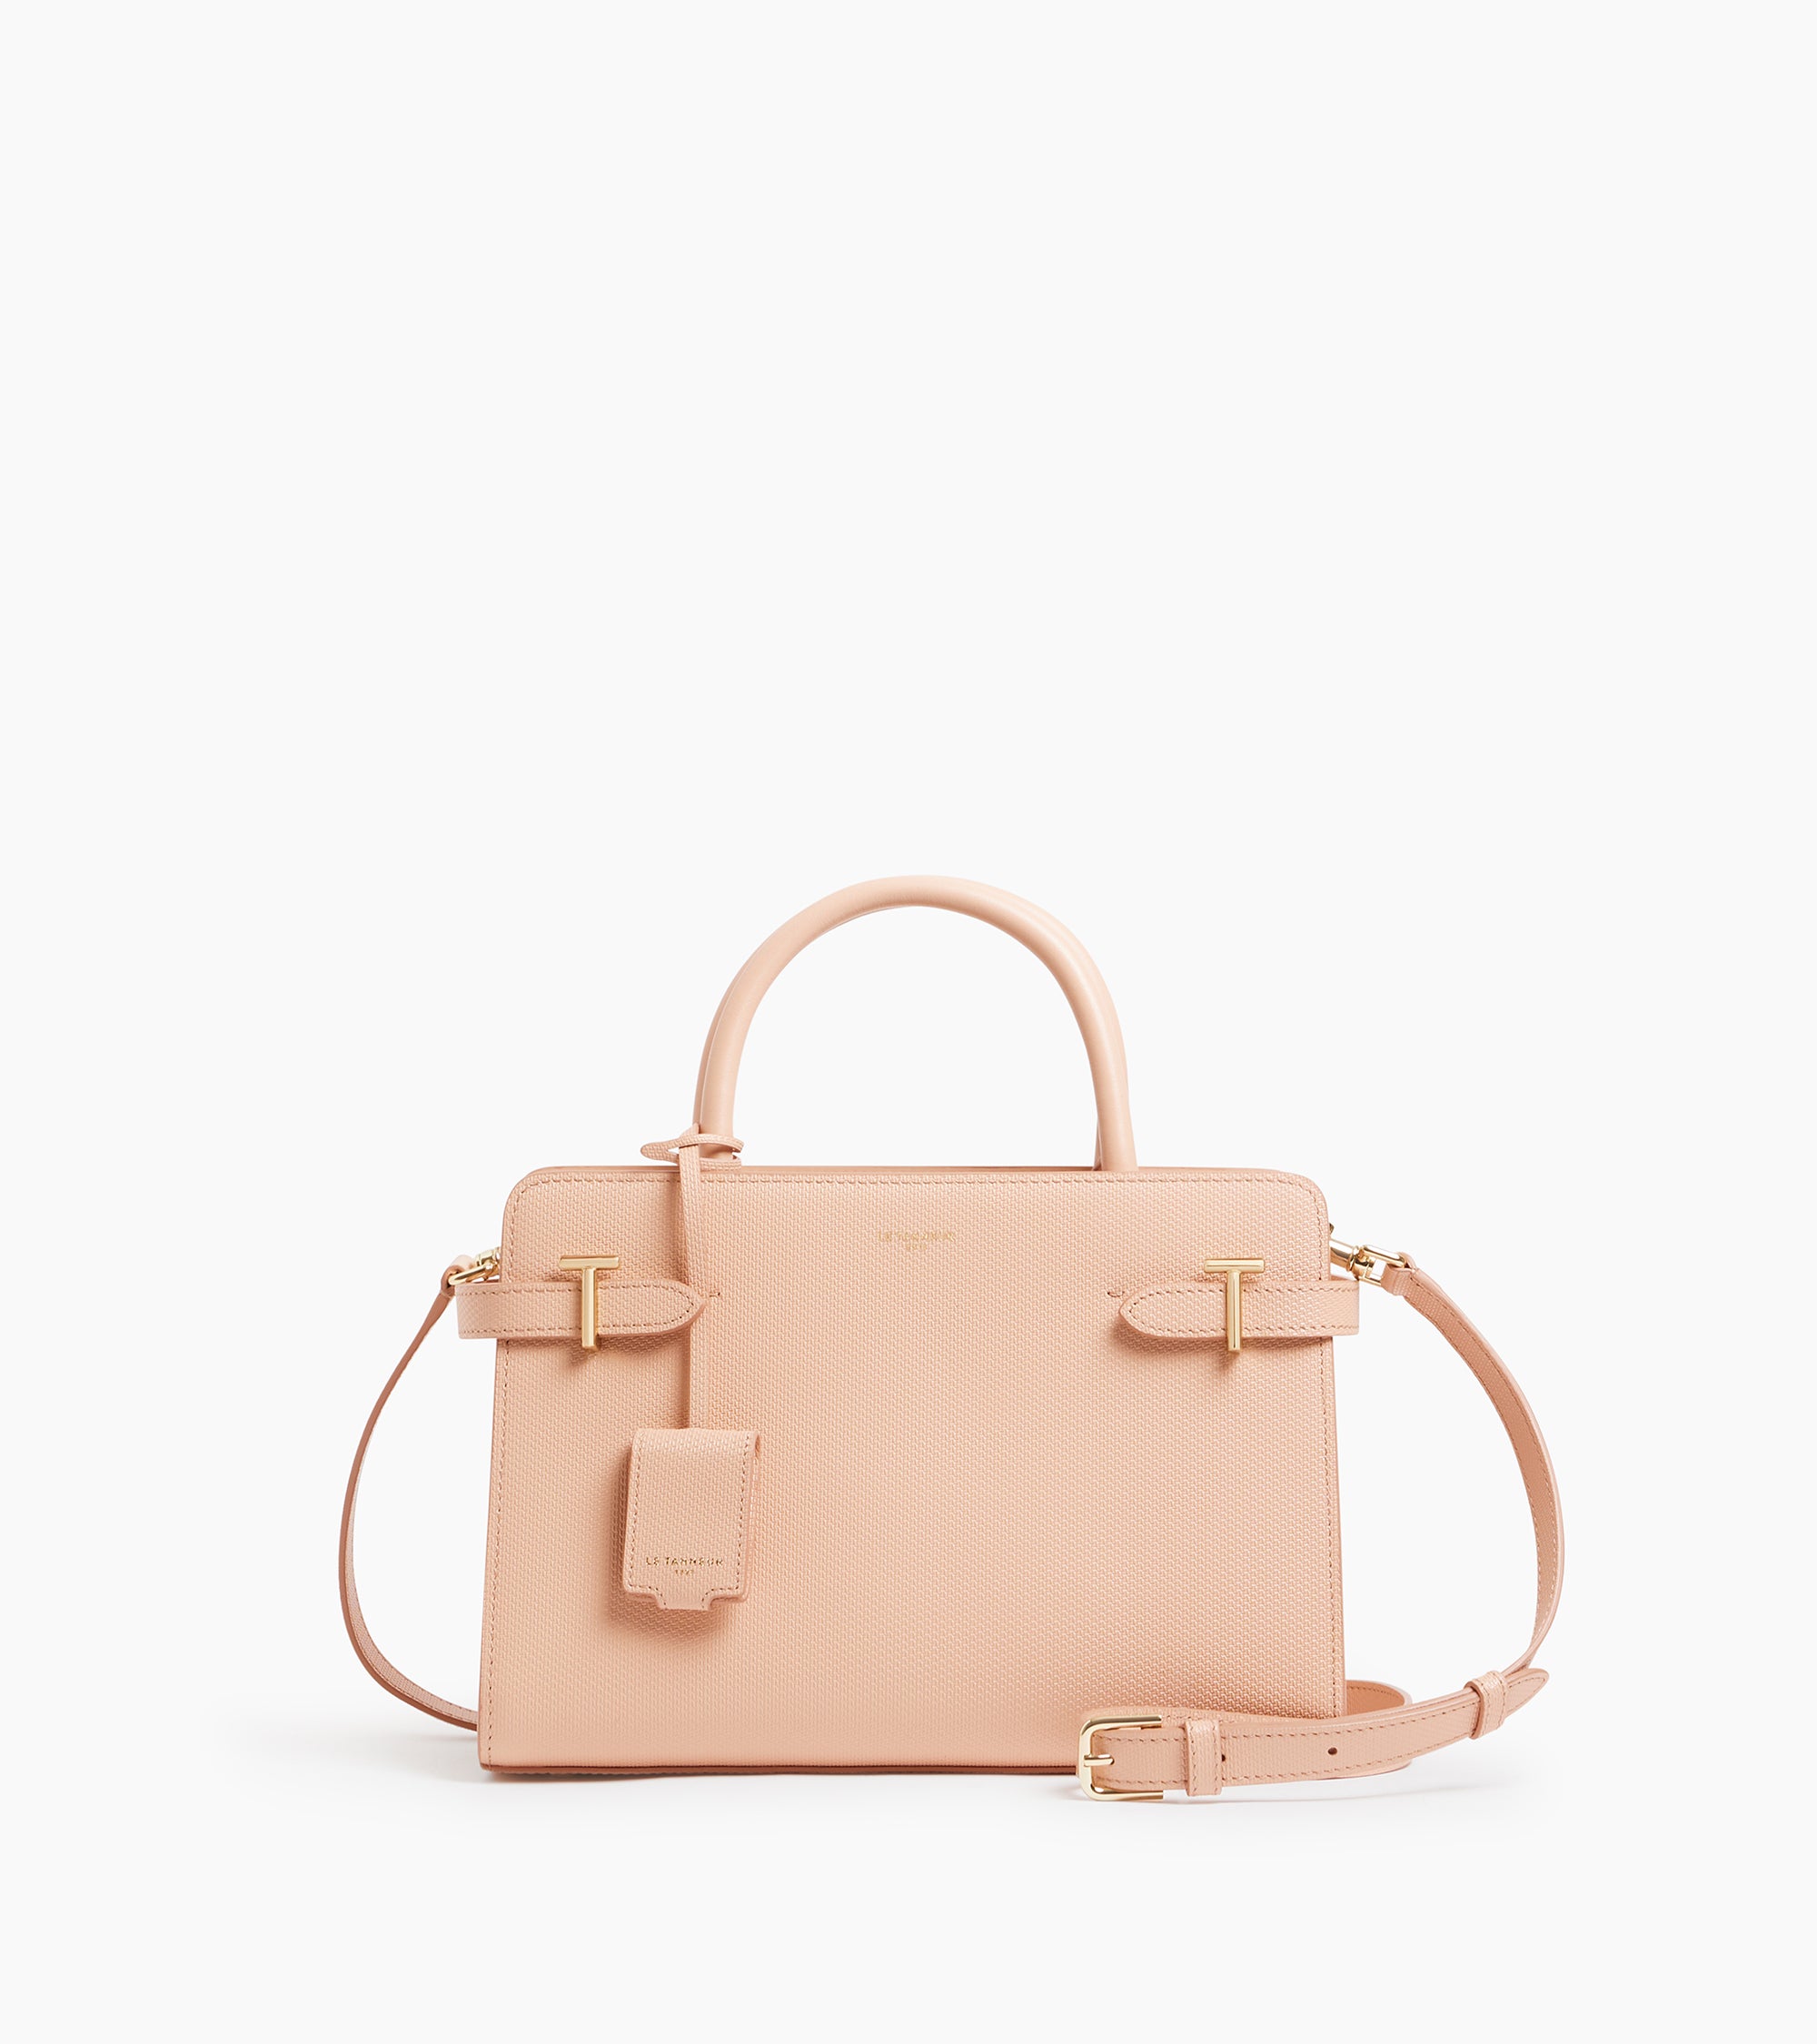 Emilie medium-sized handbag in signature T leather